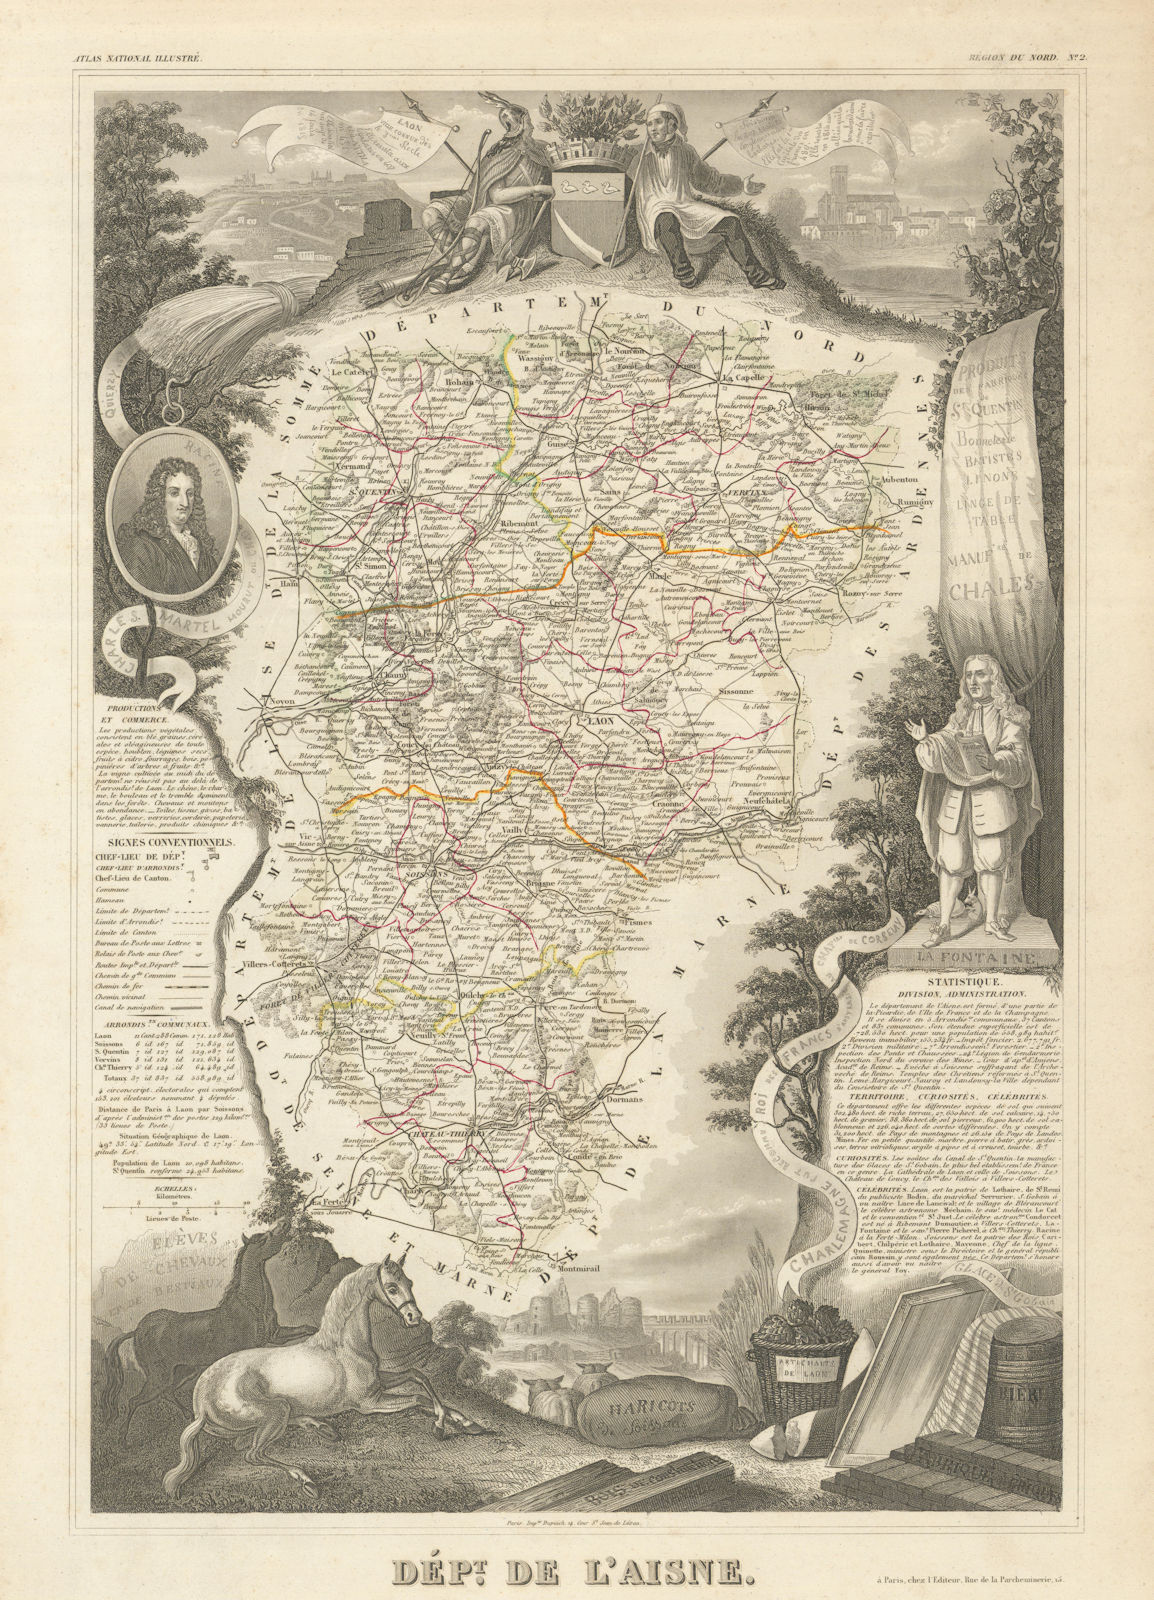 Département de l'AISNE. Decorative antique map/carte by Victor LEVASSEUR 1856